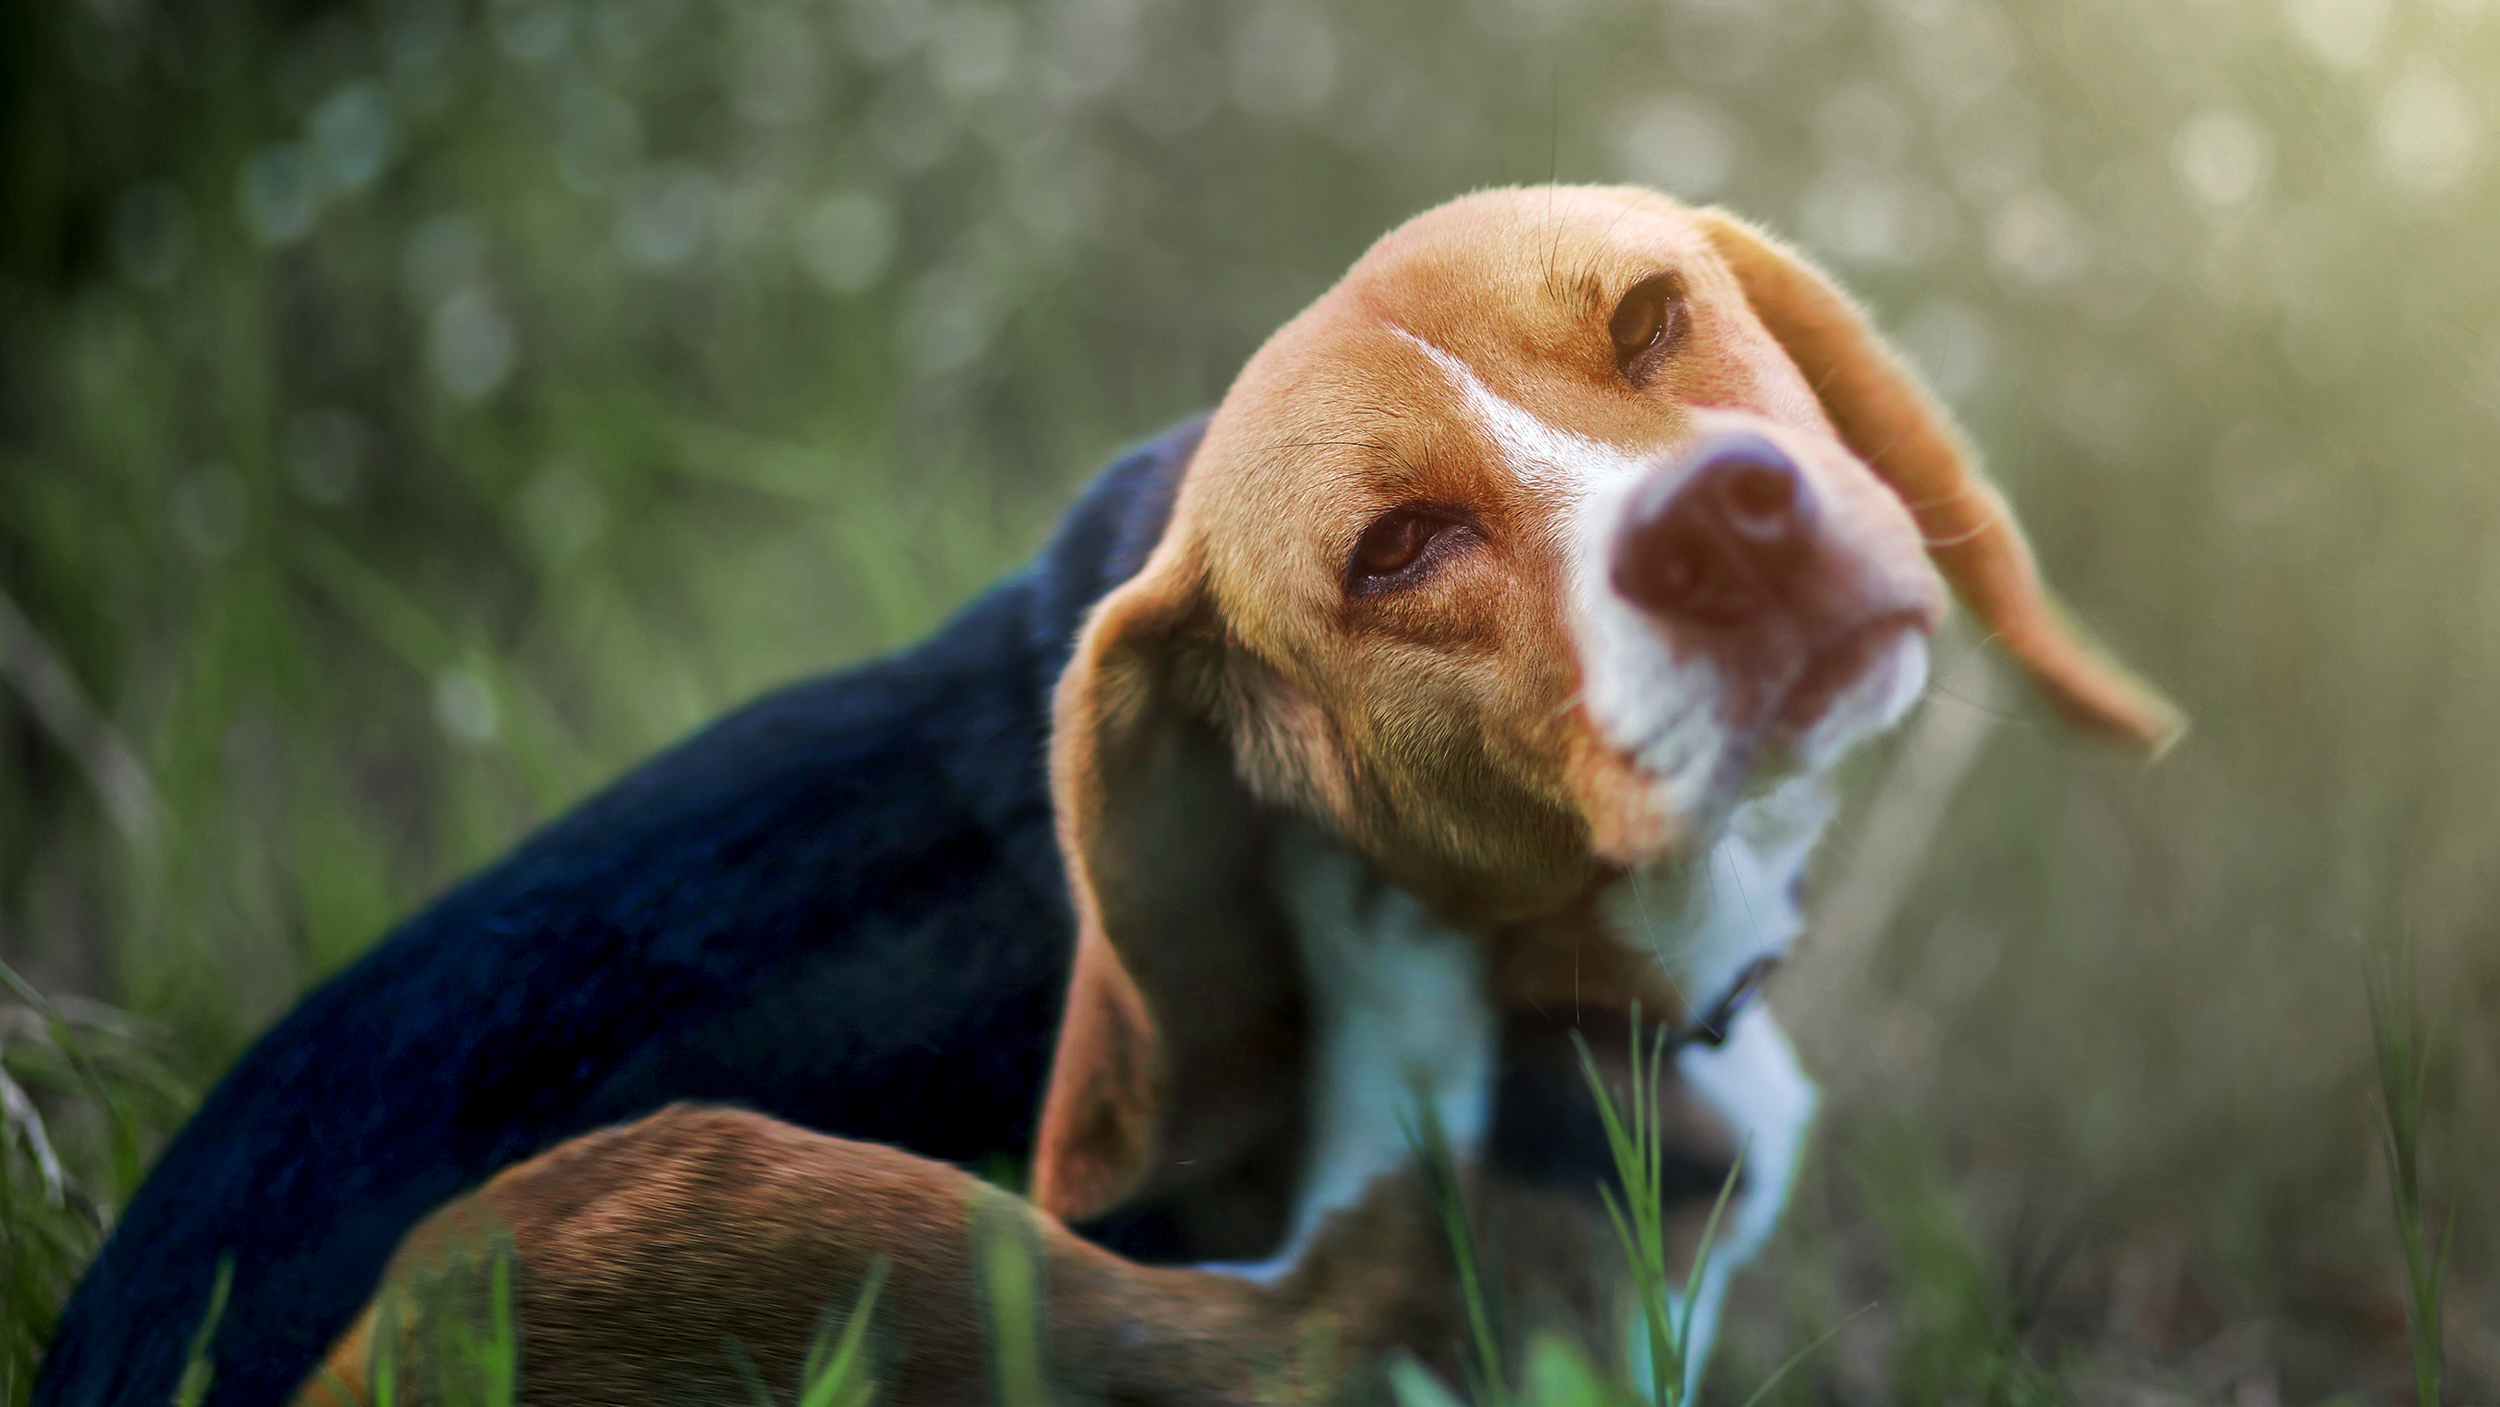 Anjing Beagle dewasa duduk di luar ruangan di rumput tinggi menggaruk telinganya.